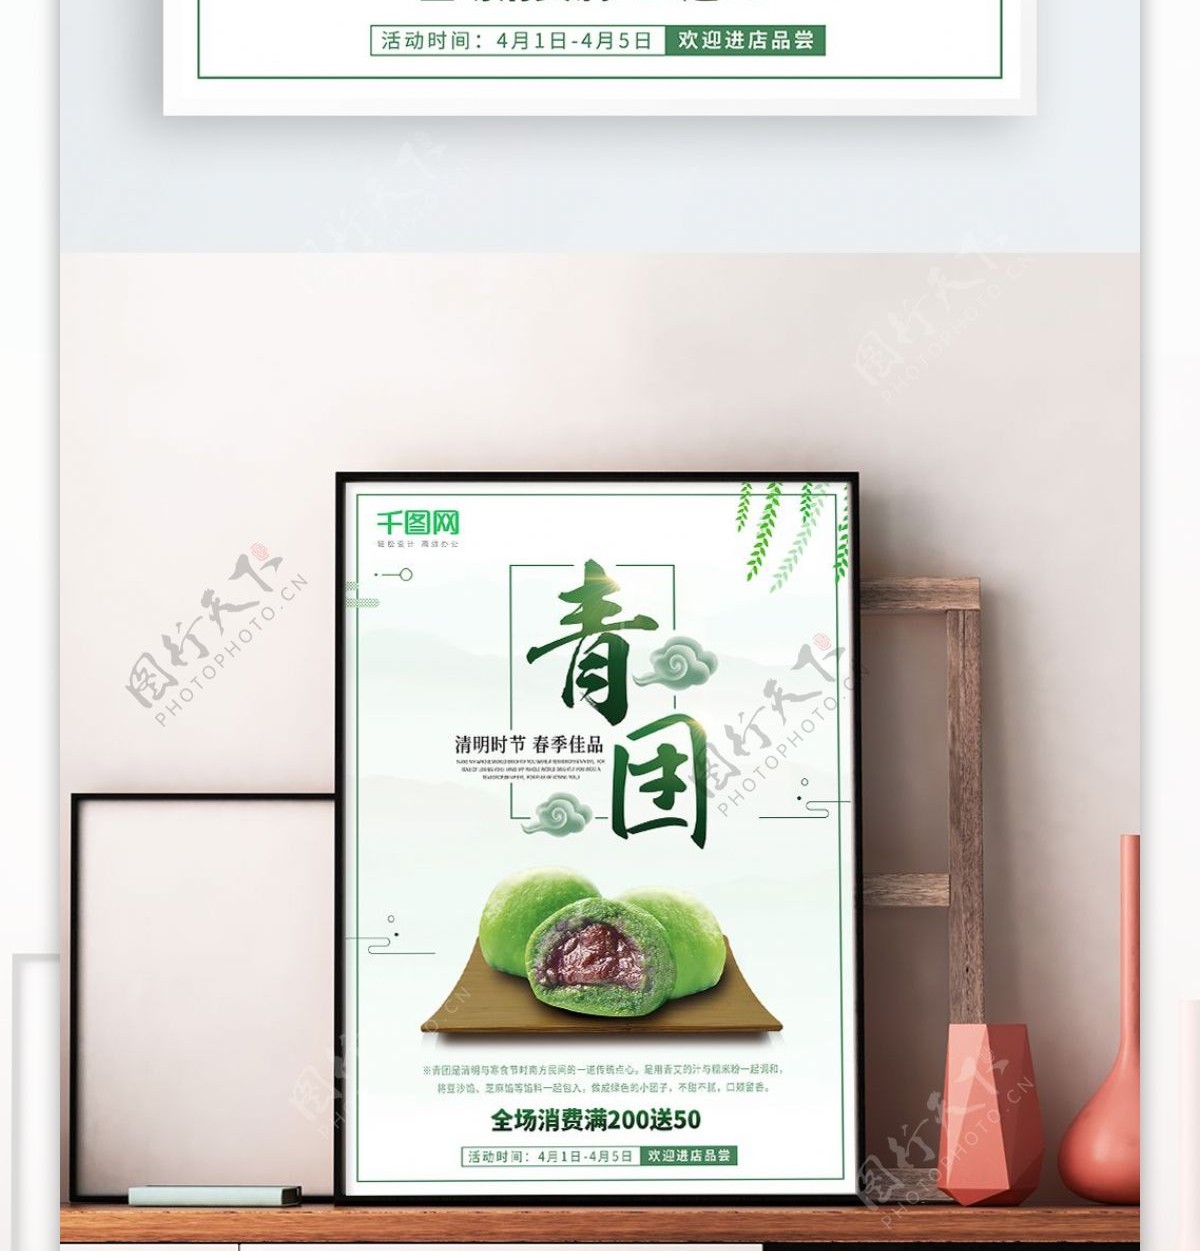 中国风清新清明节传统美食青团促销海报